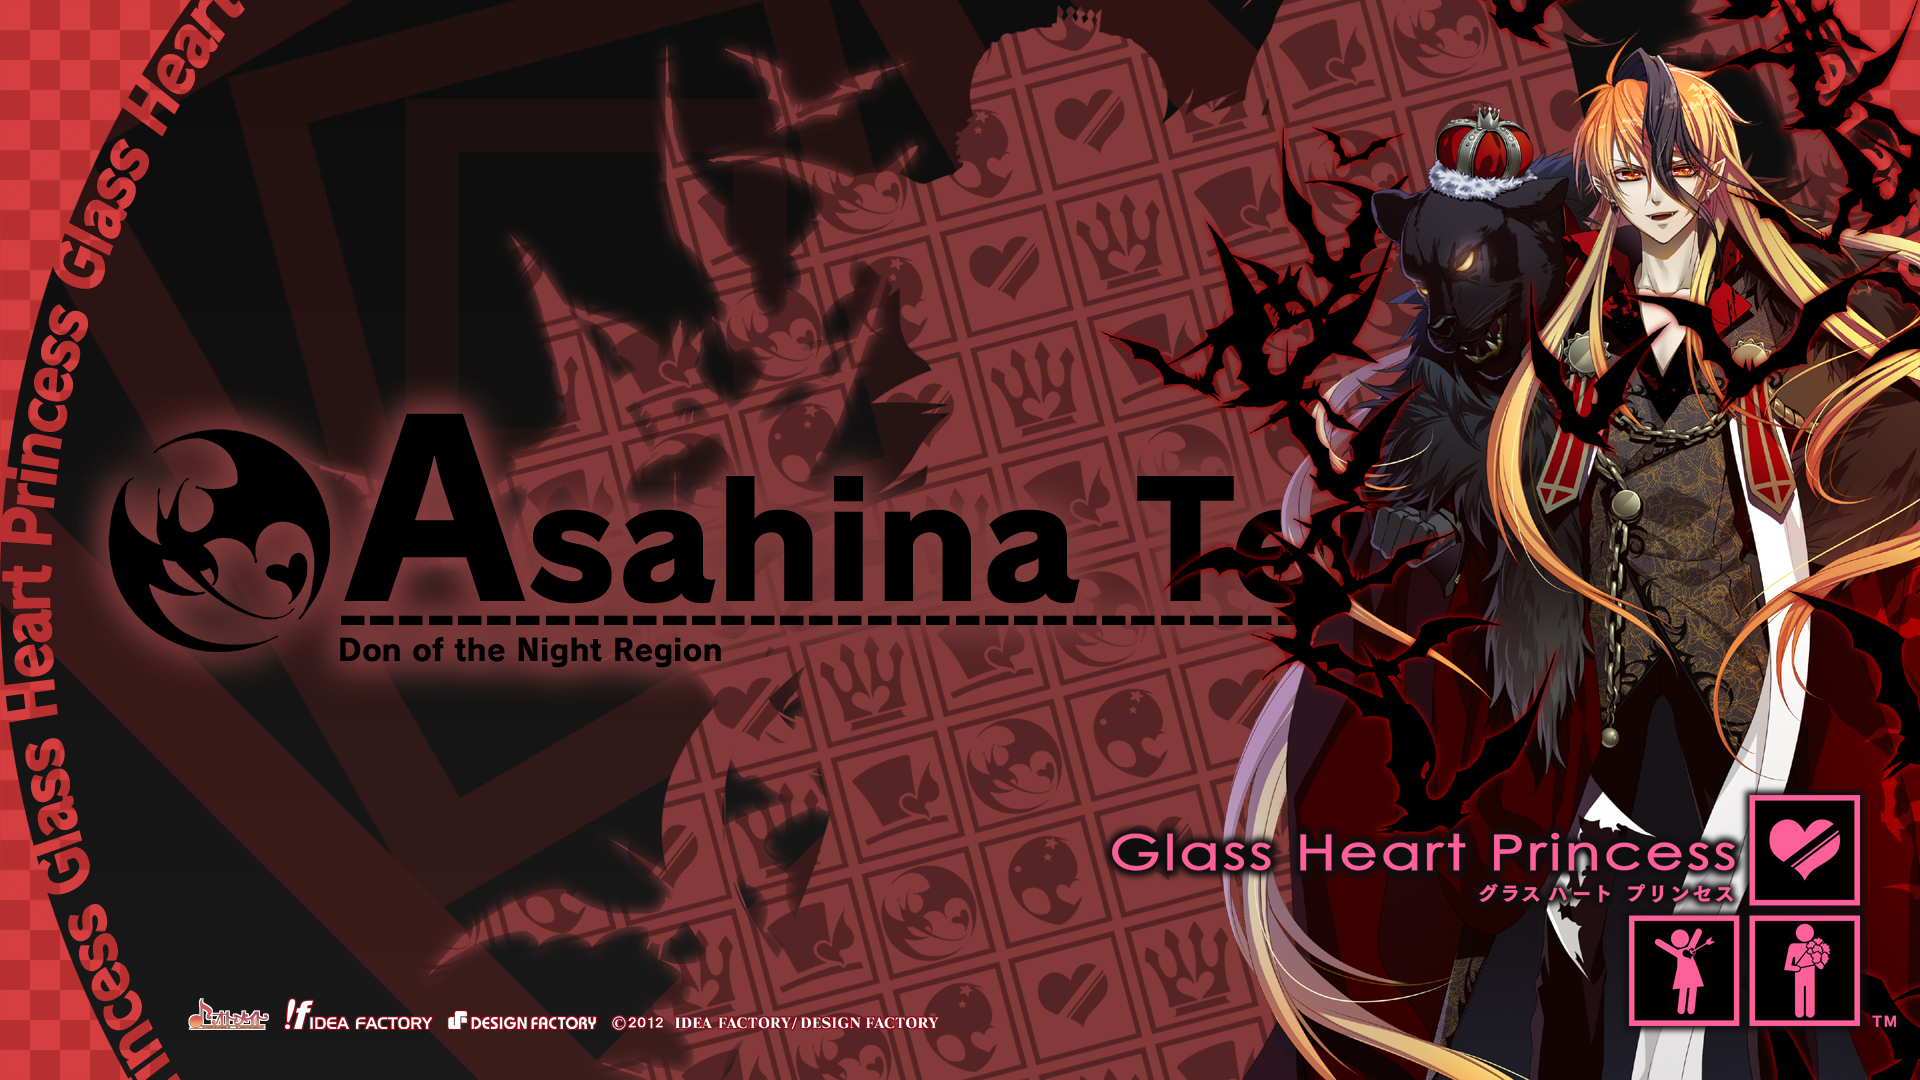 801219 descargar imagen animado, glass heart princess, asahina tenma: fondos de pantalla y protectores de pantalla gratis